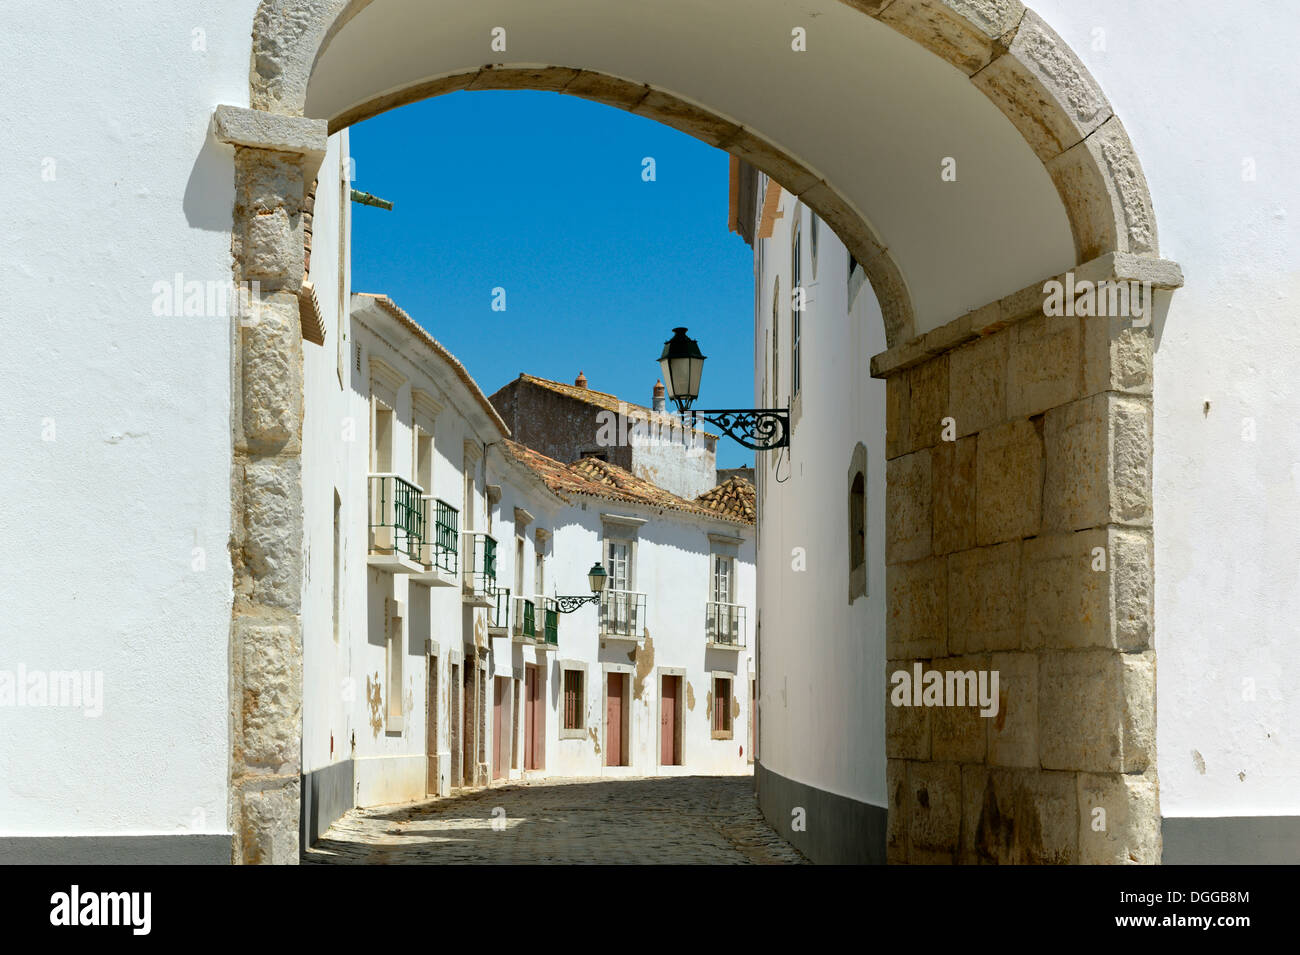 Le Portugal, l'Algarve, la vieille ville de Faro, une allée menant de la place Largo da Sé Banque D'Images